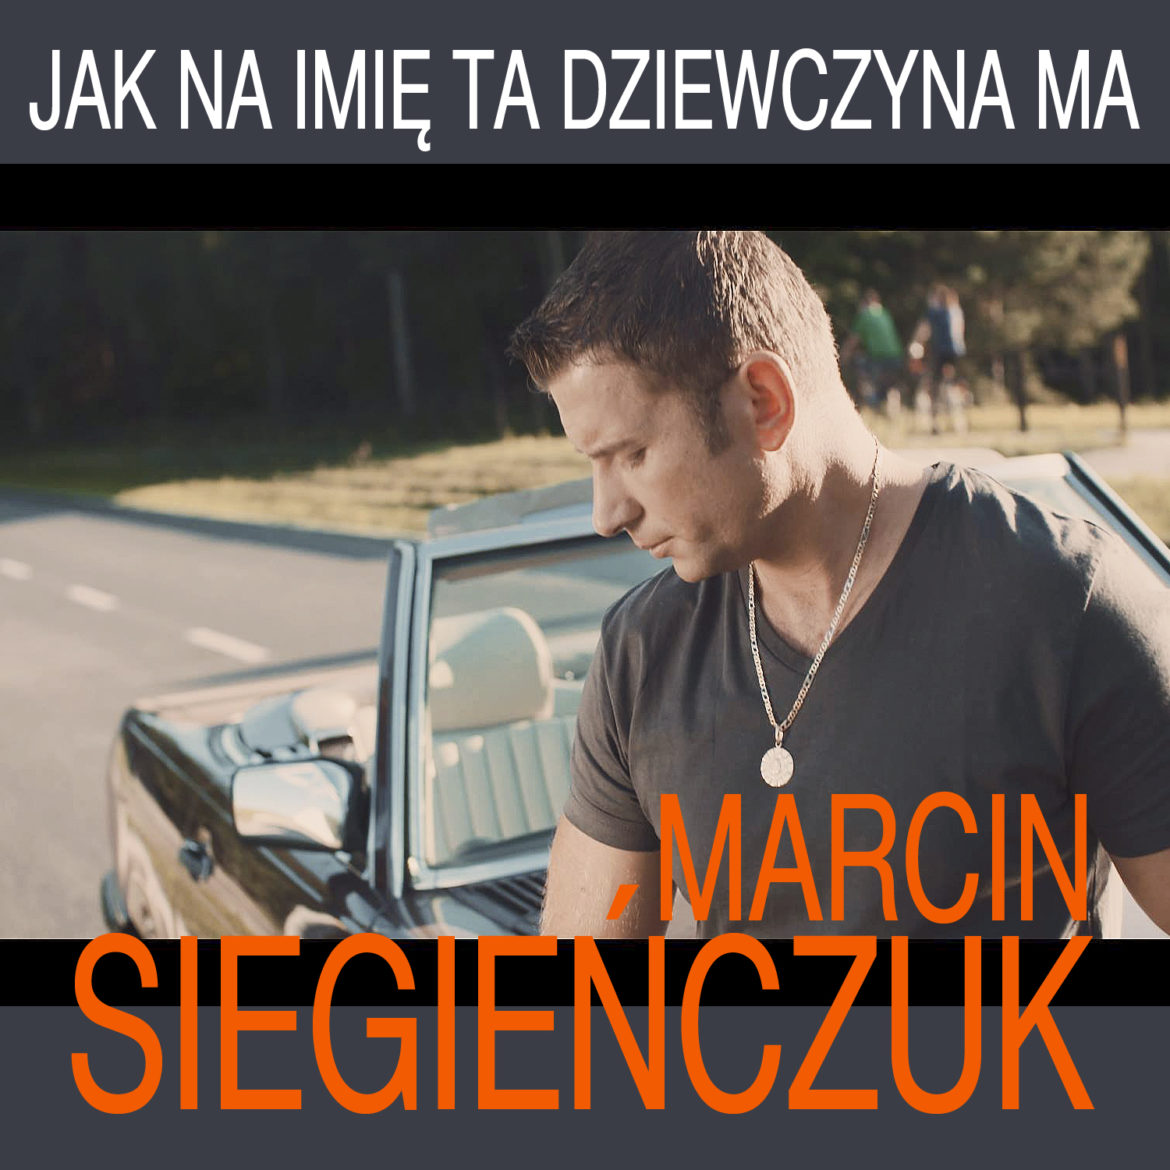 Marcin Siegienczuk - Jak Na Imie Ta Dziewczyna Ma (Extended)